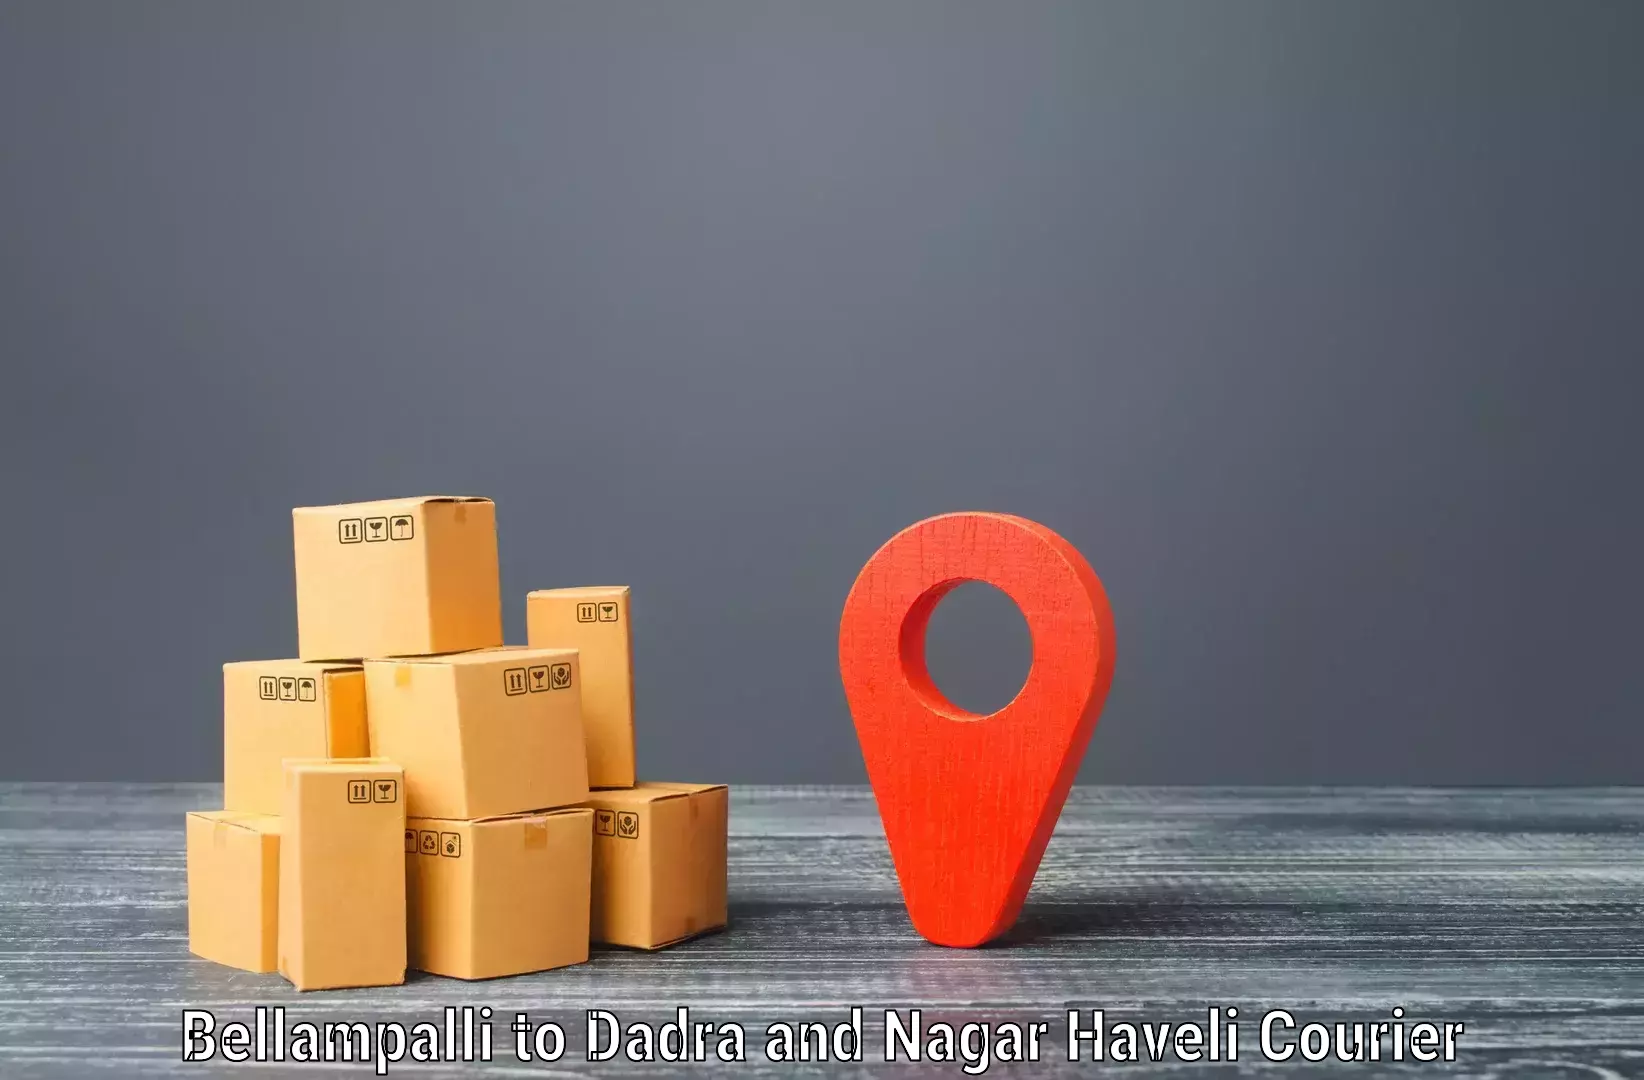 Comprehensive shipping network in Bellampalli to Silvassa